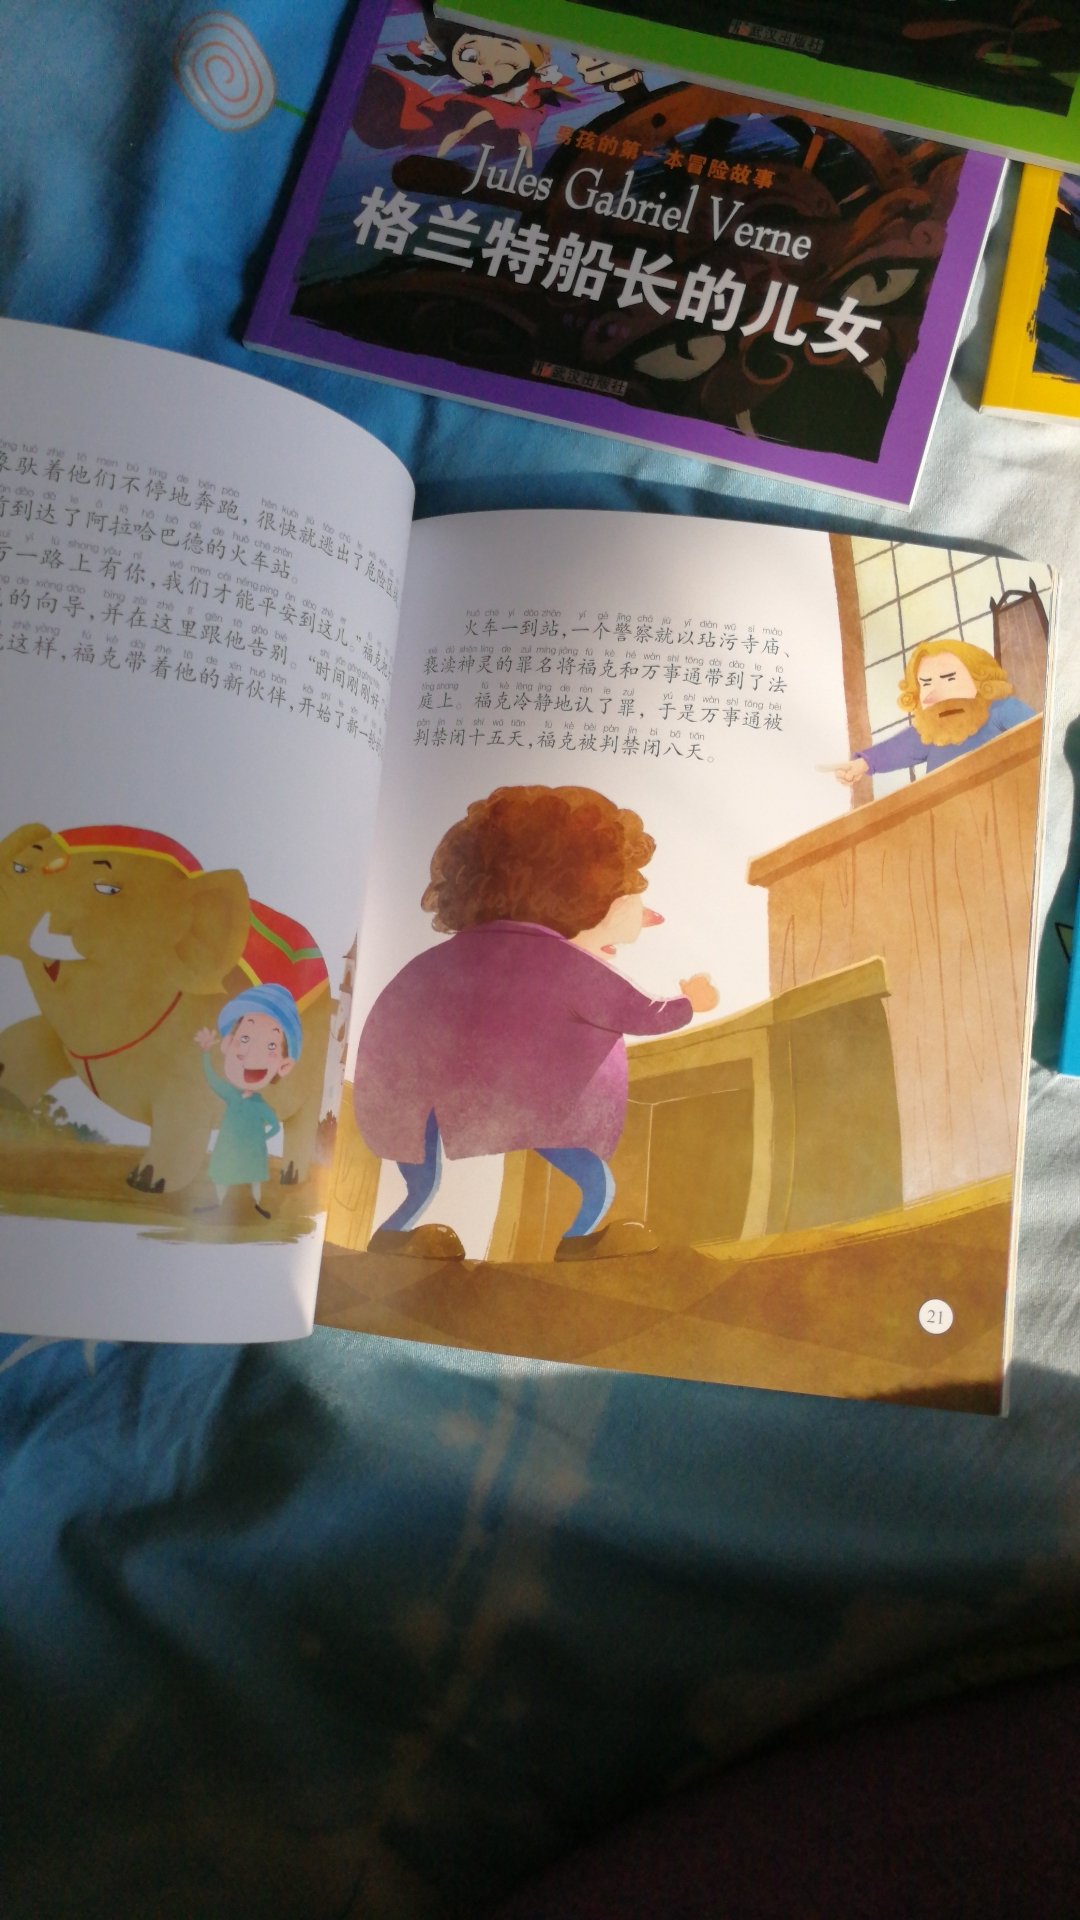 挺有意思的一套书 首先质量非常好 故事比较简单配上图画适合小孩子看 画得很好 这一套冒险书孩子应该很喜欢